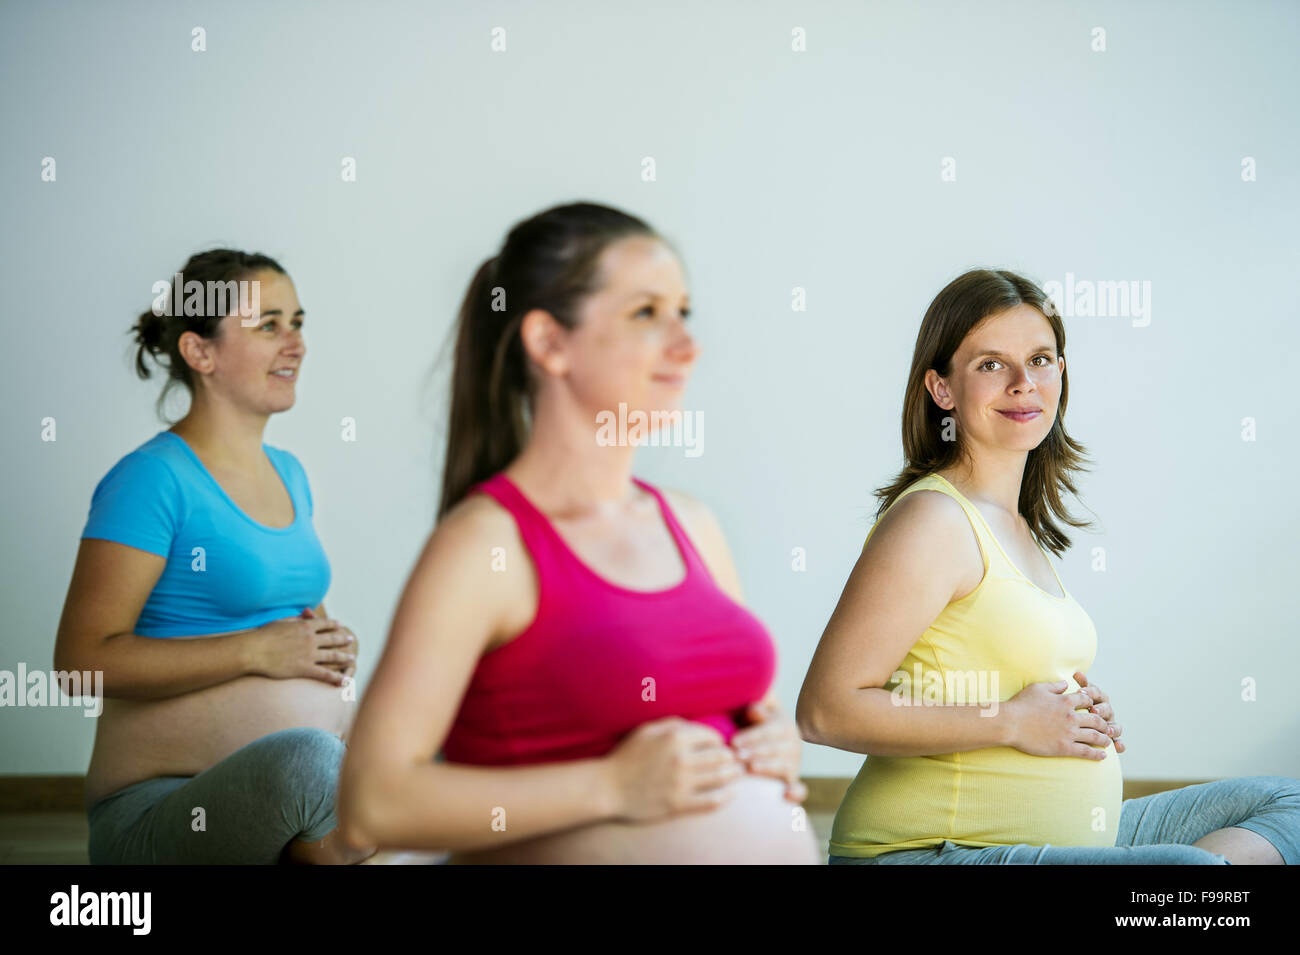 Grupo de mujeres jóvenes embarazadas haciendo ejercicio de relajación en el ejercicio de mat Foto de stock